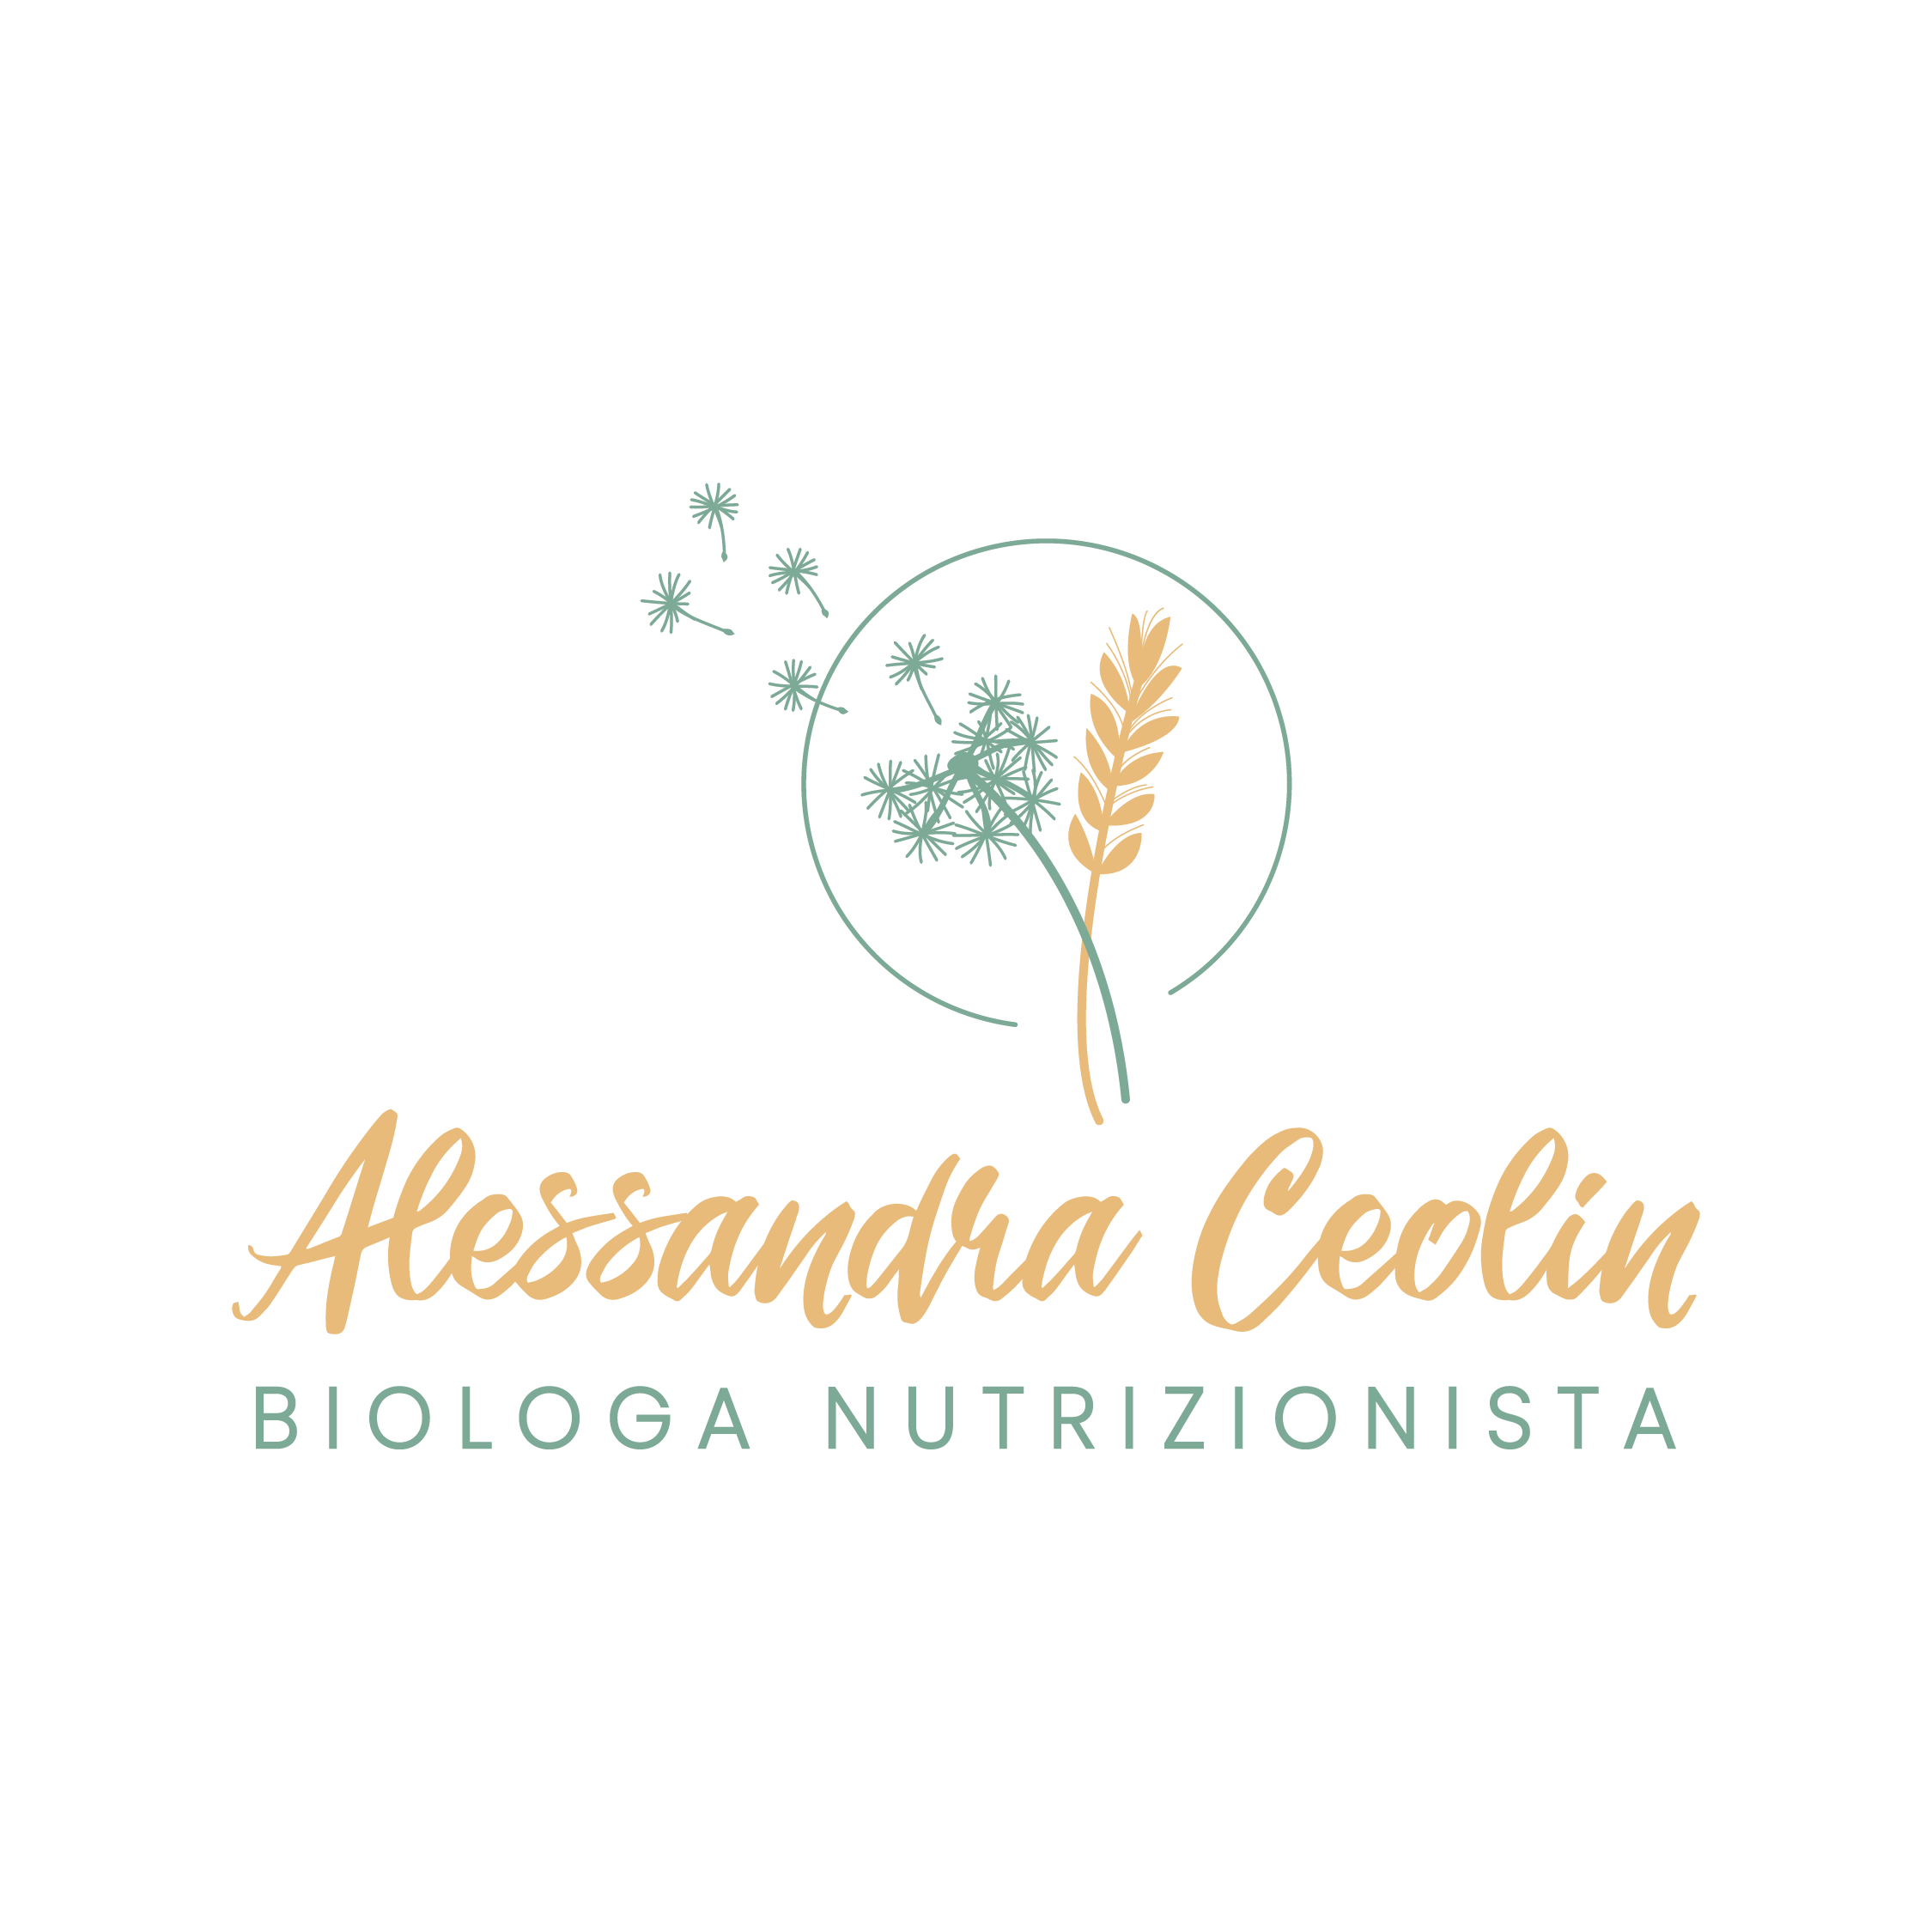 Alessandra ceolin Logo